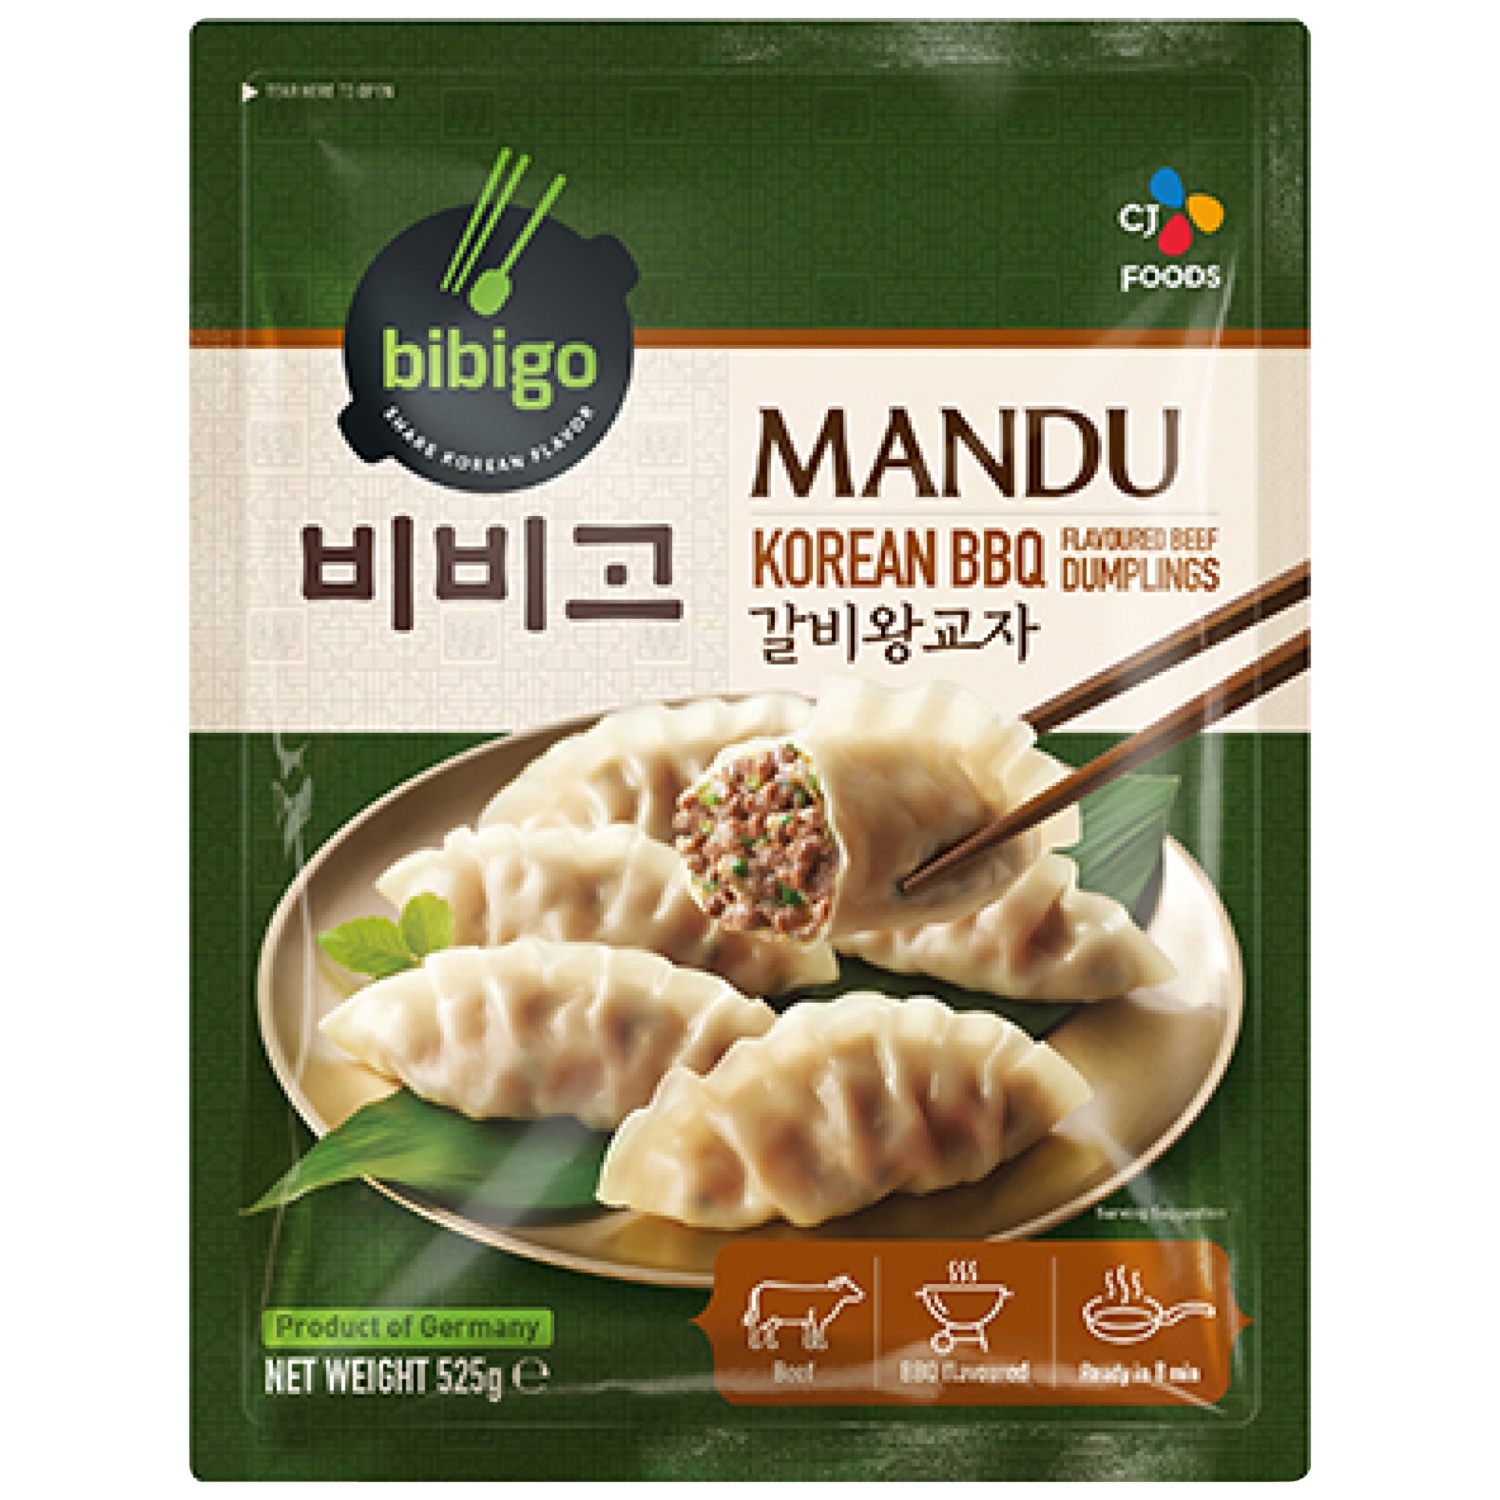 Mandu Korean BBQ Dumpling